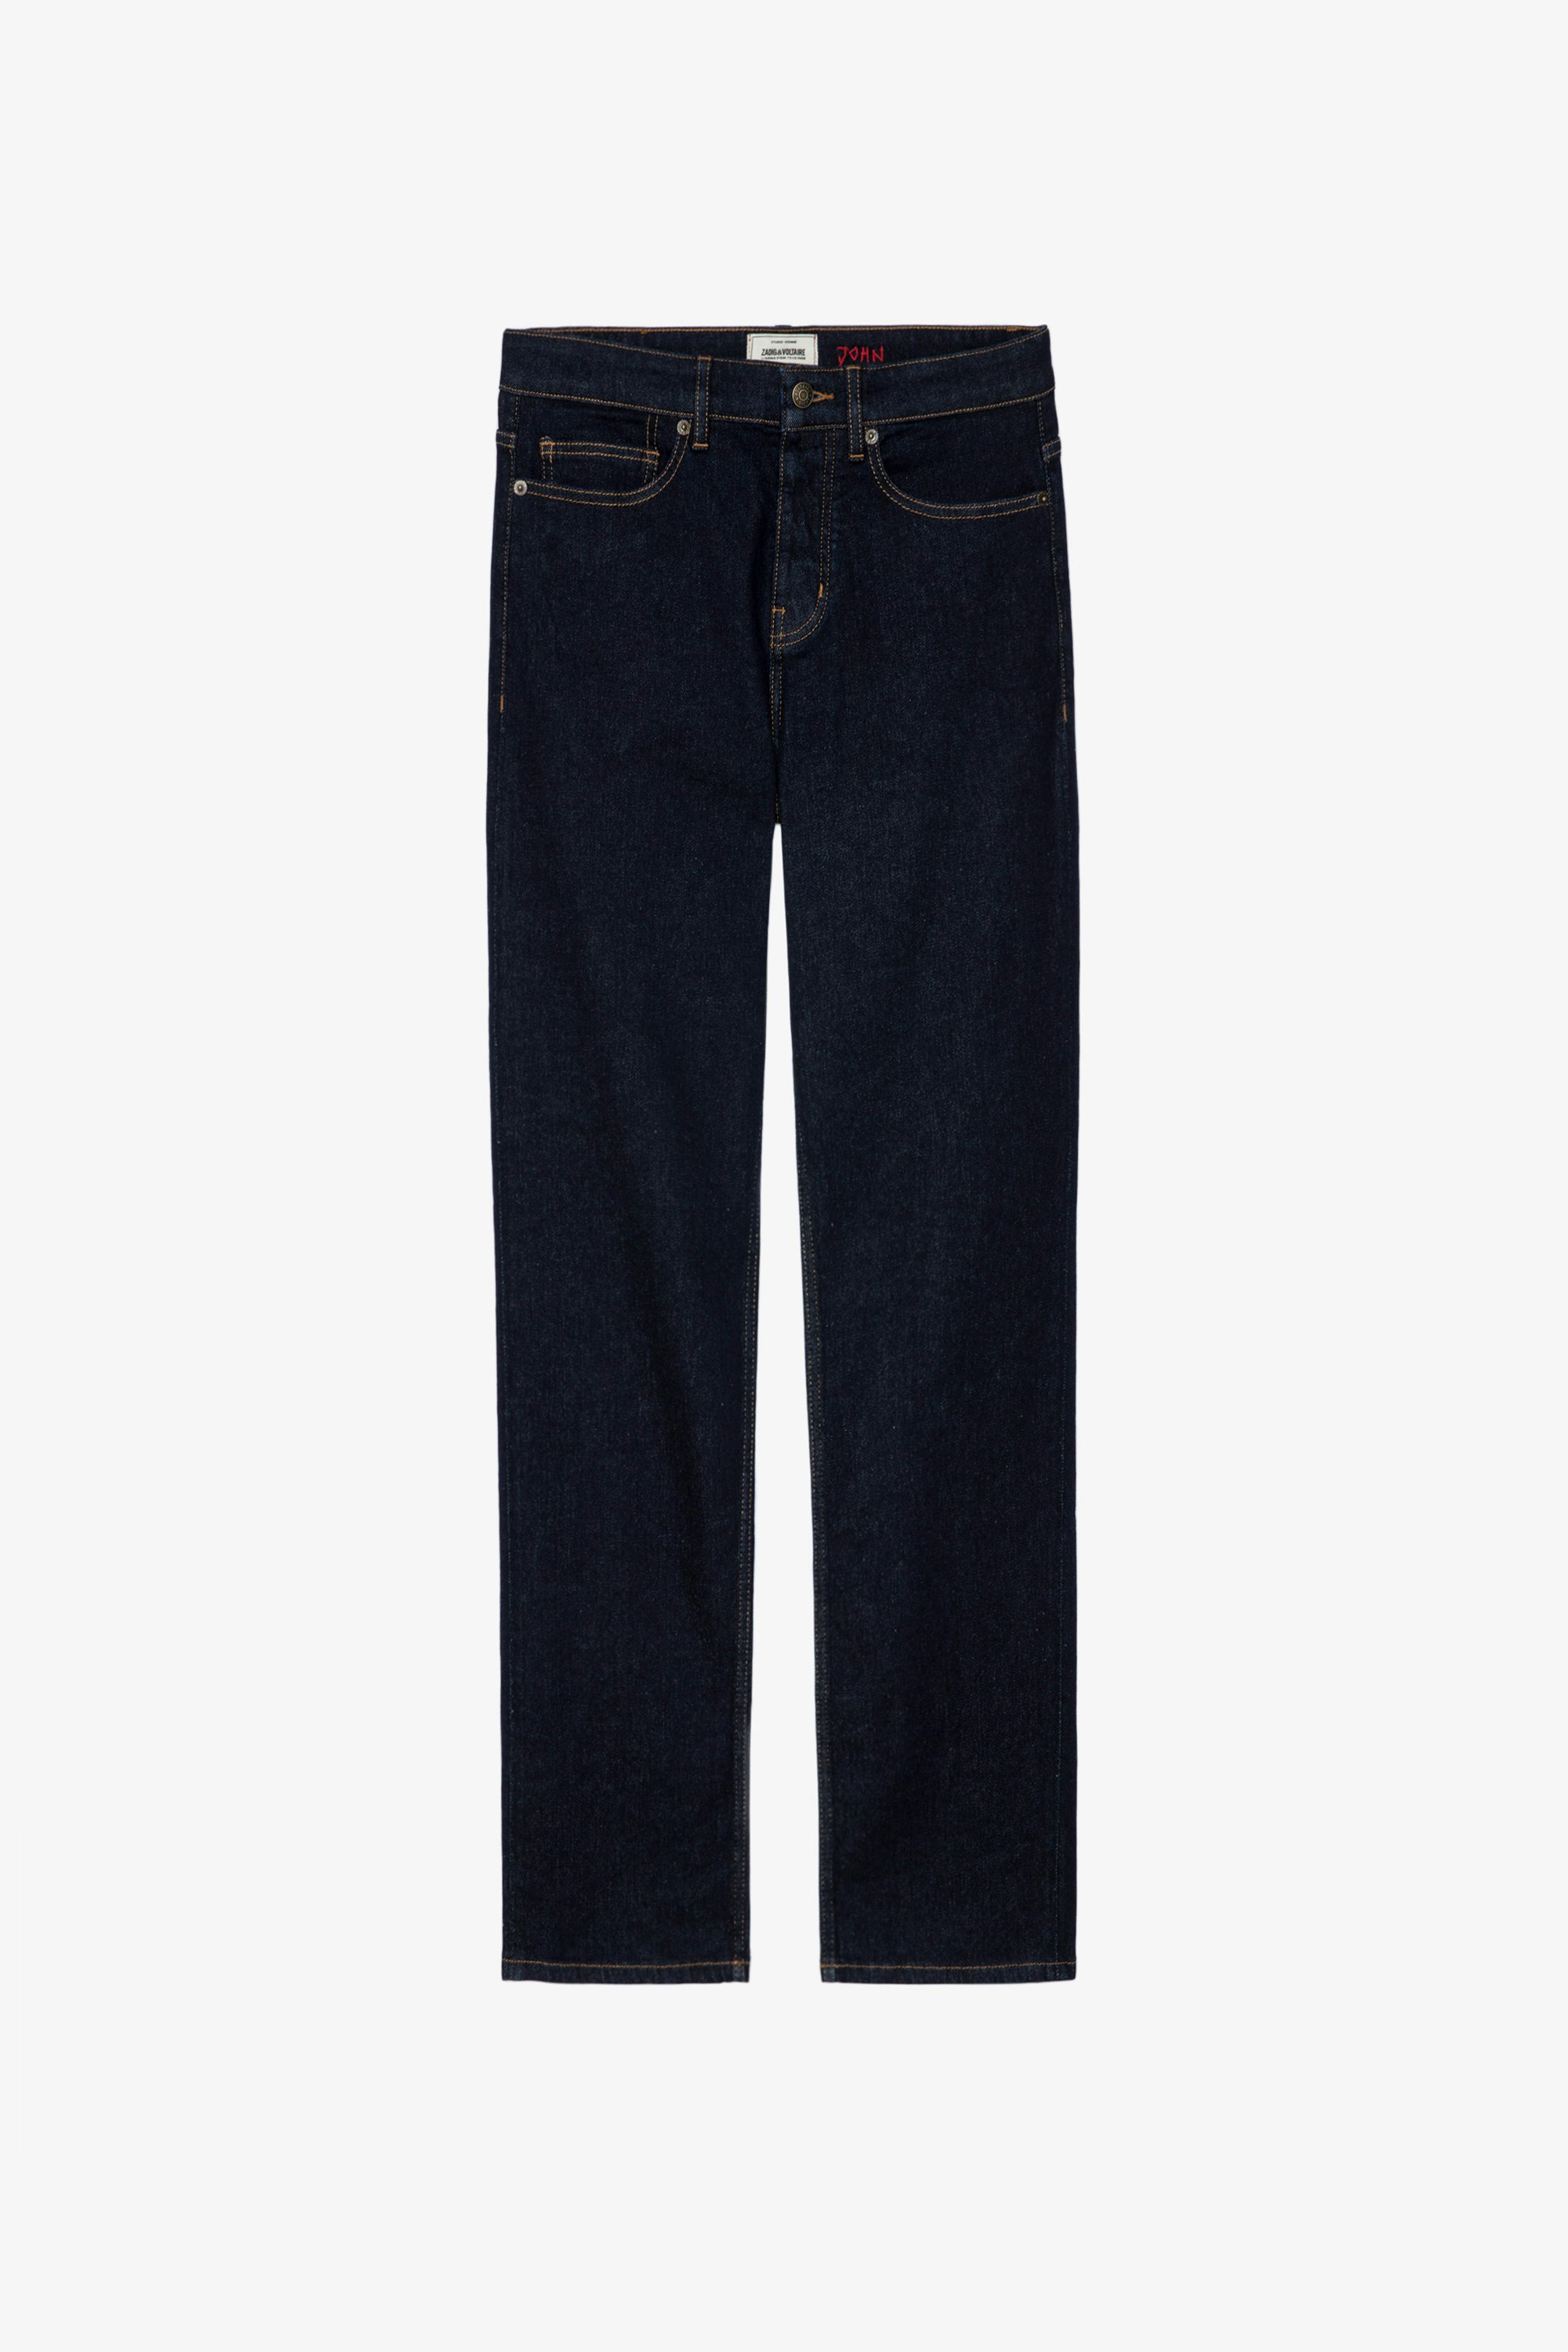 Jeans David Eco Brut Jeans in denim a contrasto uomo